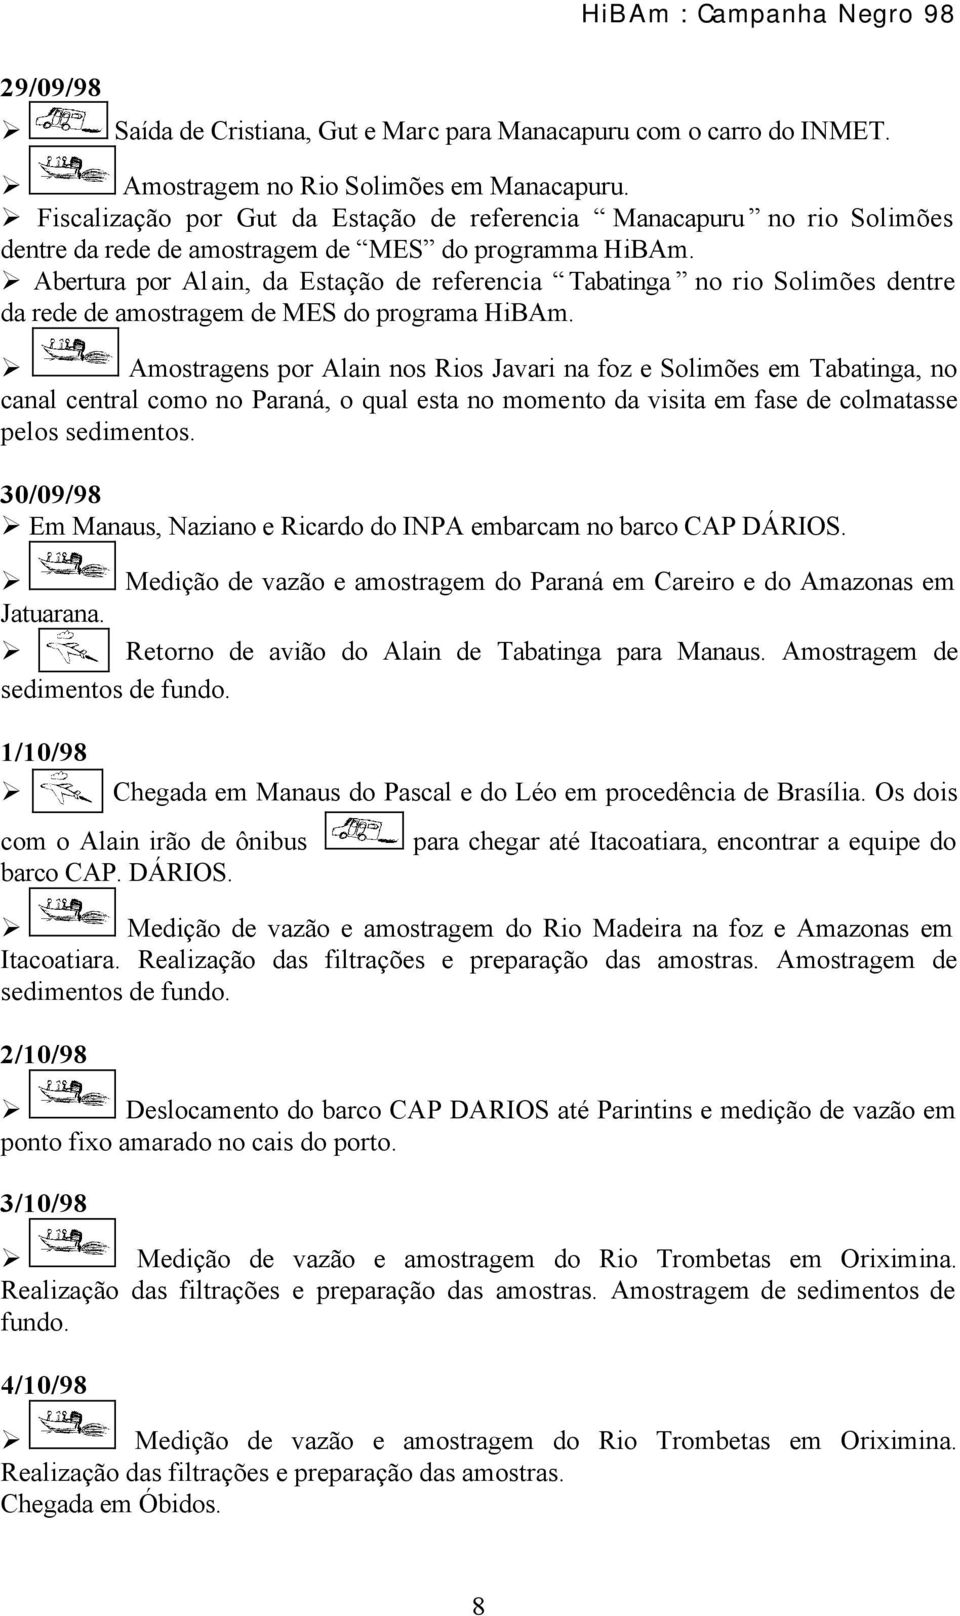 Abertura por Alain, da Estação de referencia Tabatinga no rio Solimões dentre da rede de amostragem de MES do programa HiBAm.